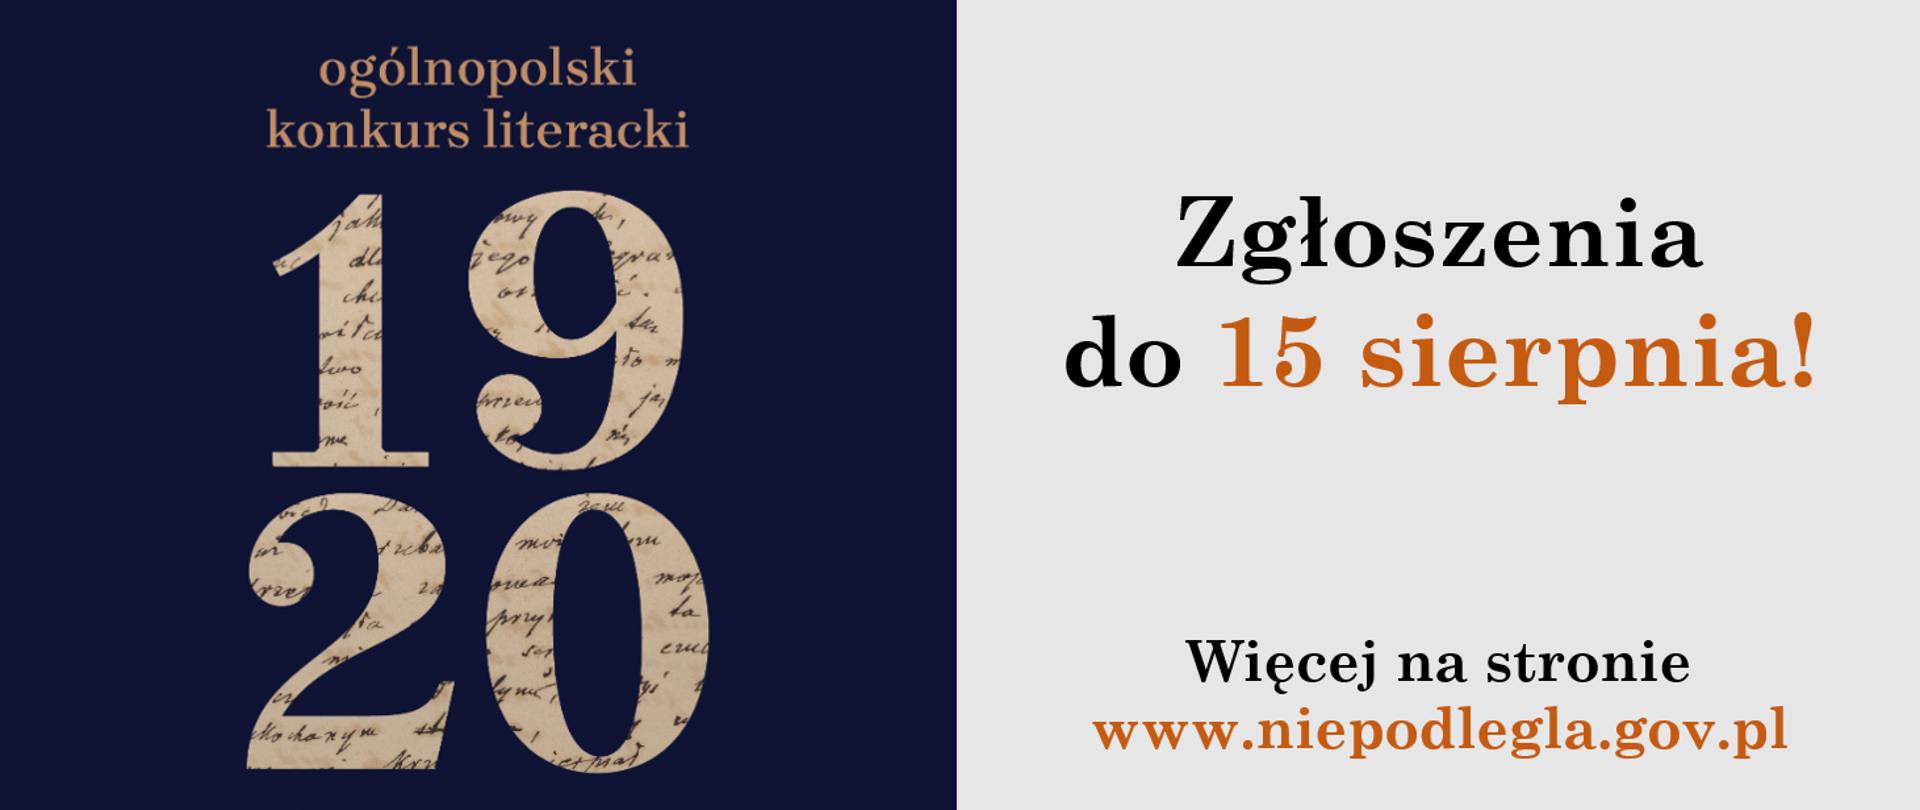 Ogólnopolski konkurs literacki w 100. rocznicę Bitwy Warszawskiej